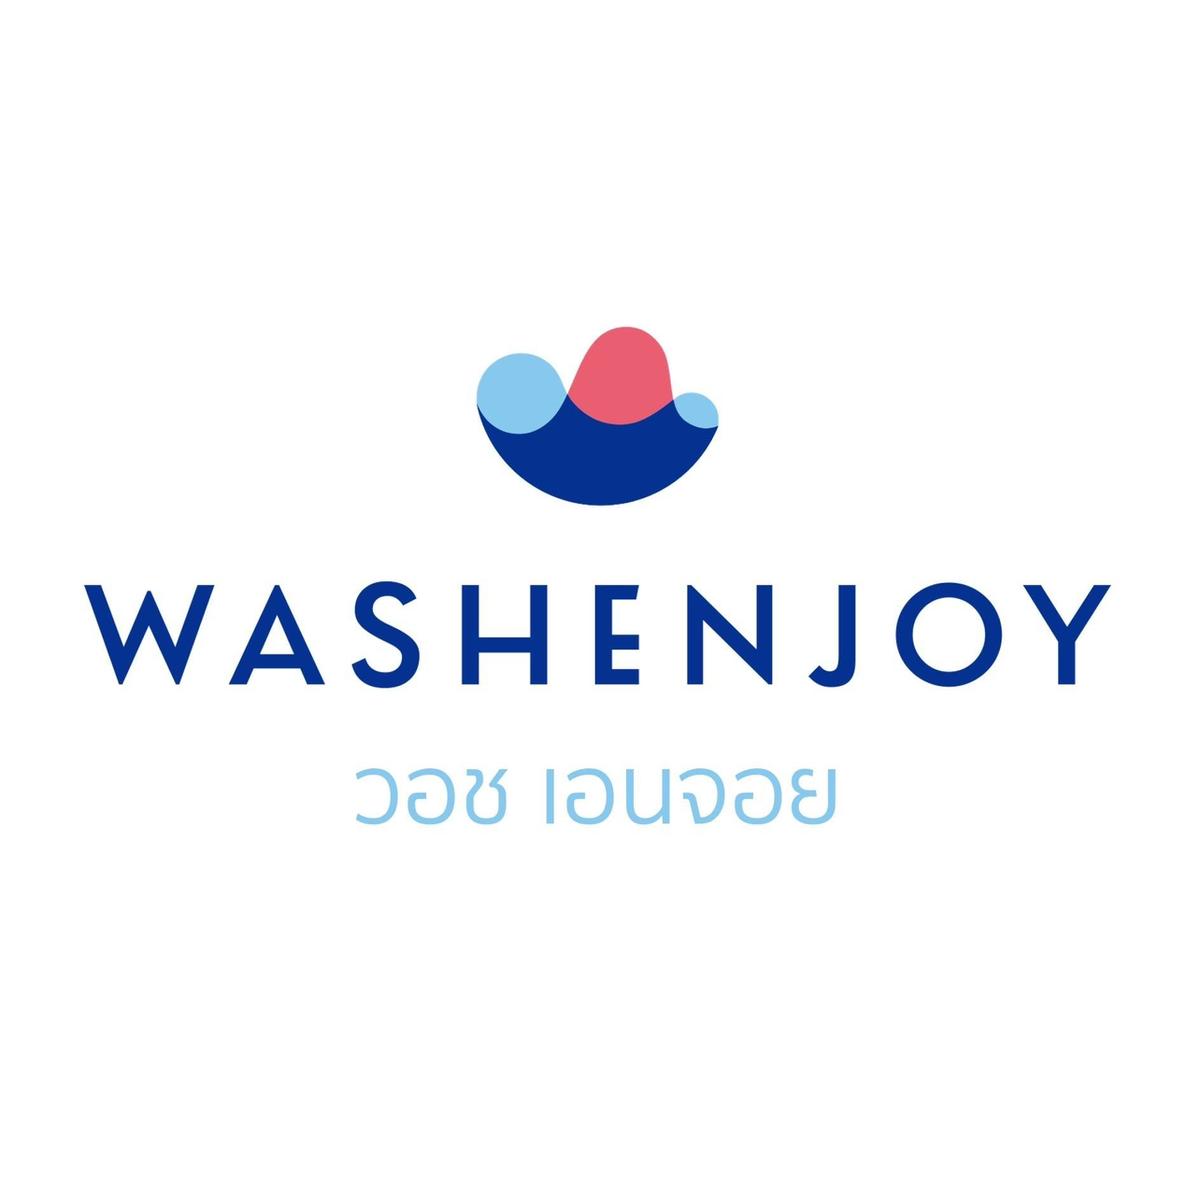 Washenjoy